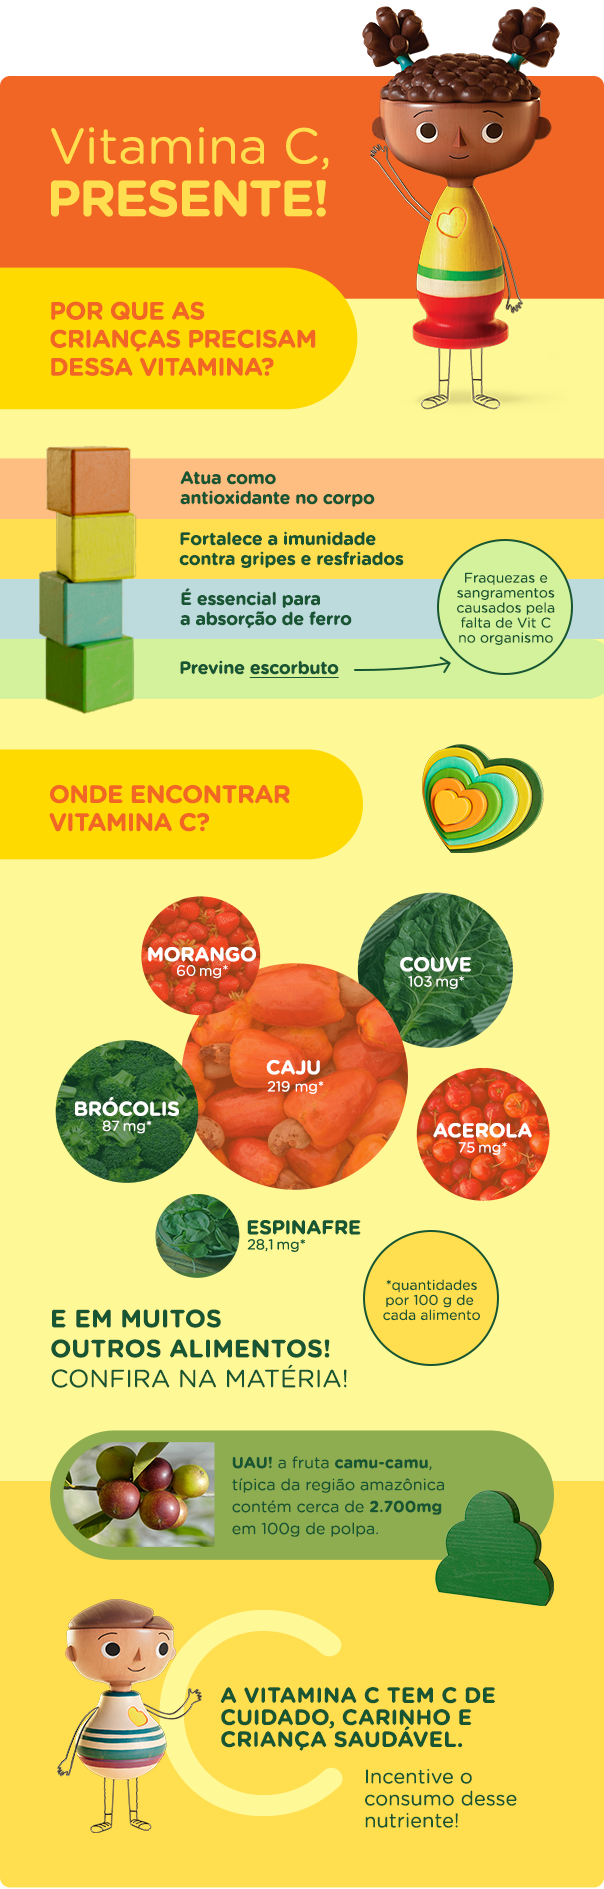 Infografico mostrando os beneficios de comer alimentos que contém vitamina C para as crianças.